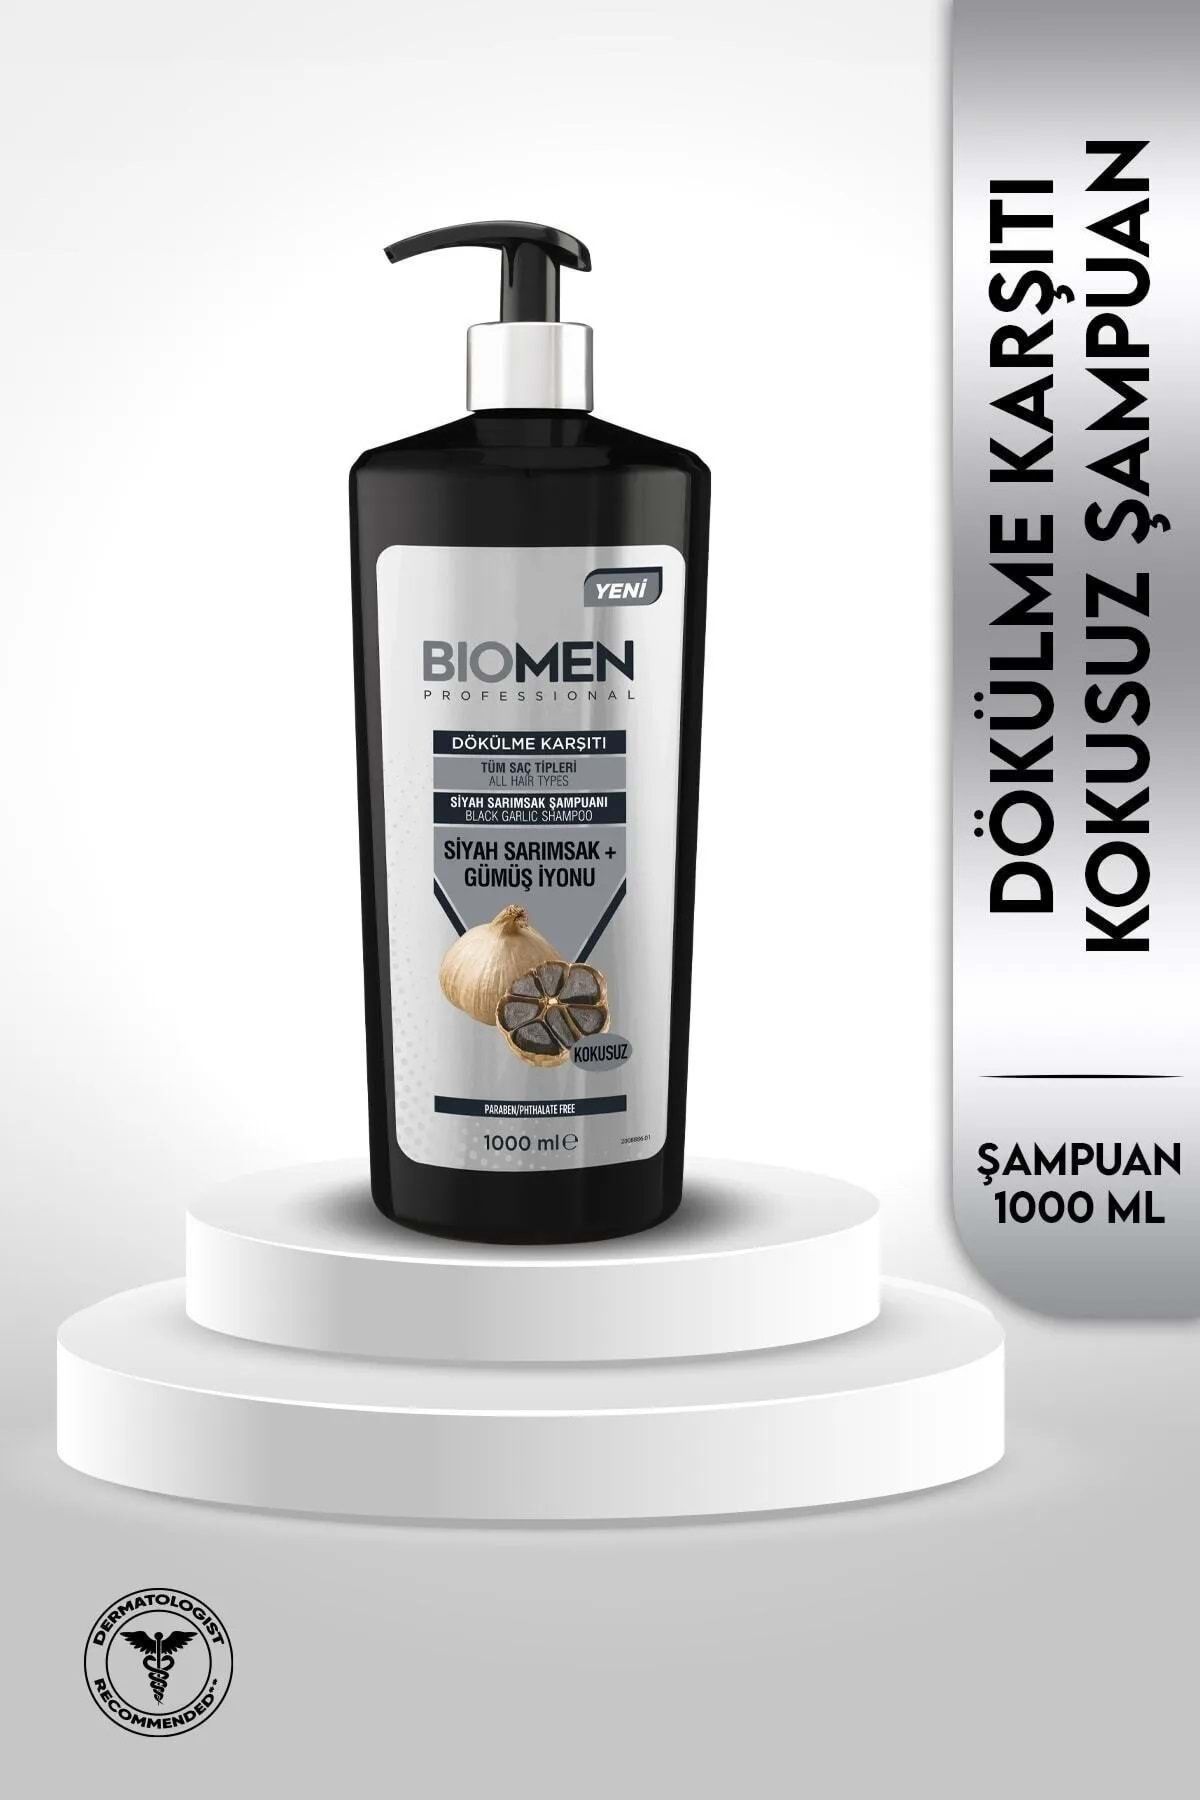 Biomen Professional Siyah Sarımsak & Gümüş İyonu Dökülme Karşıtı Şampuan 1000ML